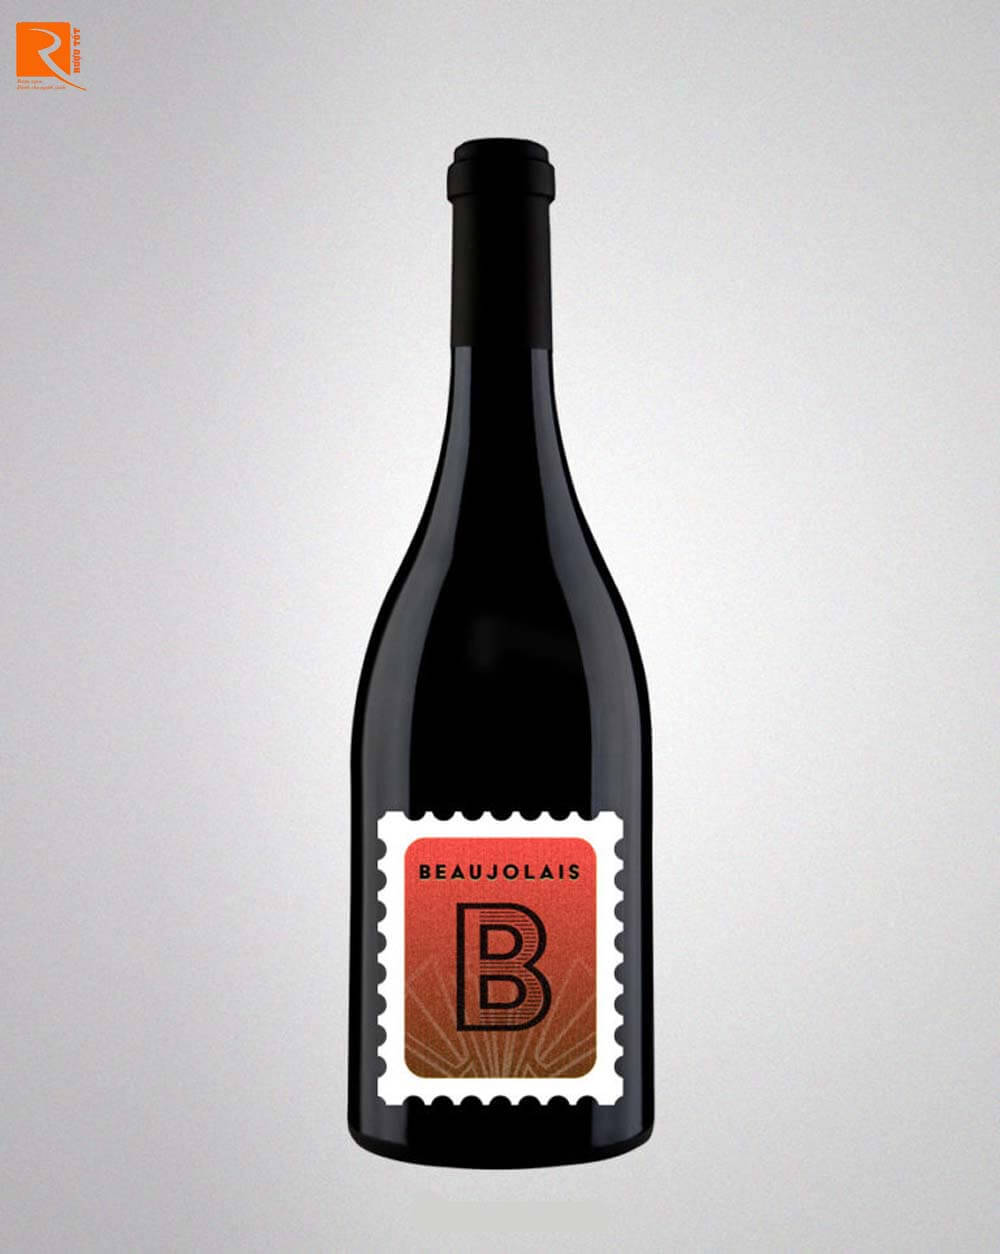 Beaujolais là rượu vang đỏ mộc mạc thường thể hiện vị cay đắng bởi tannin thấp